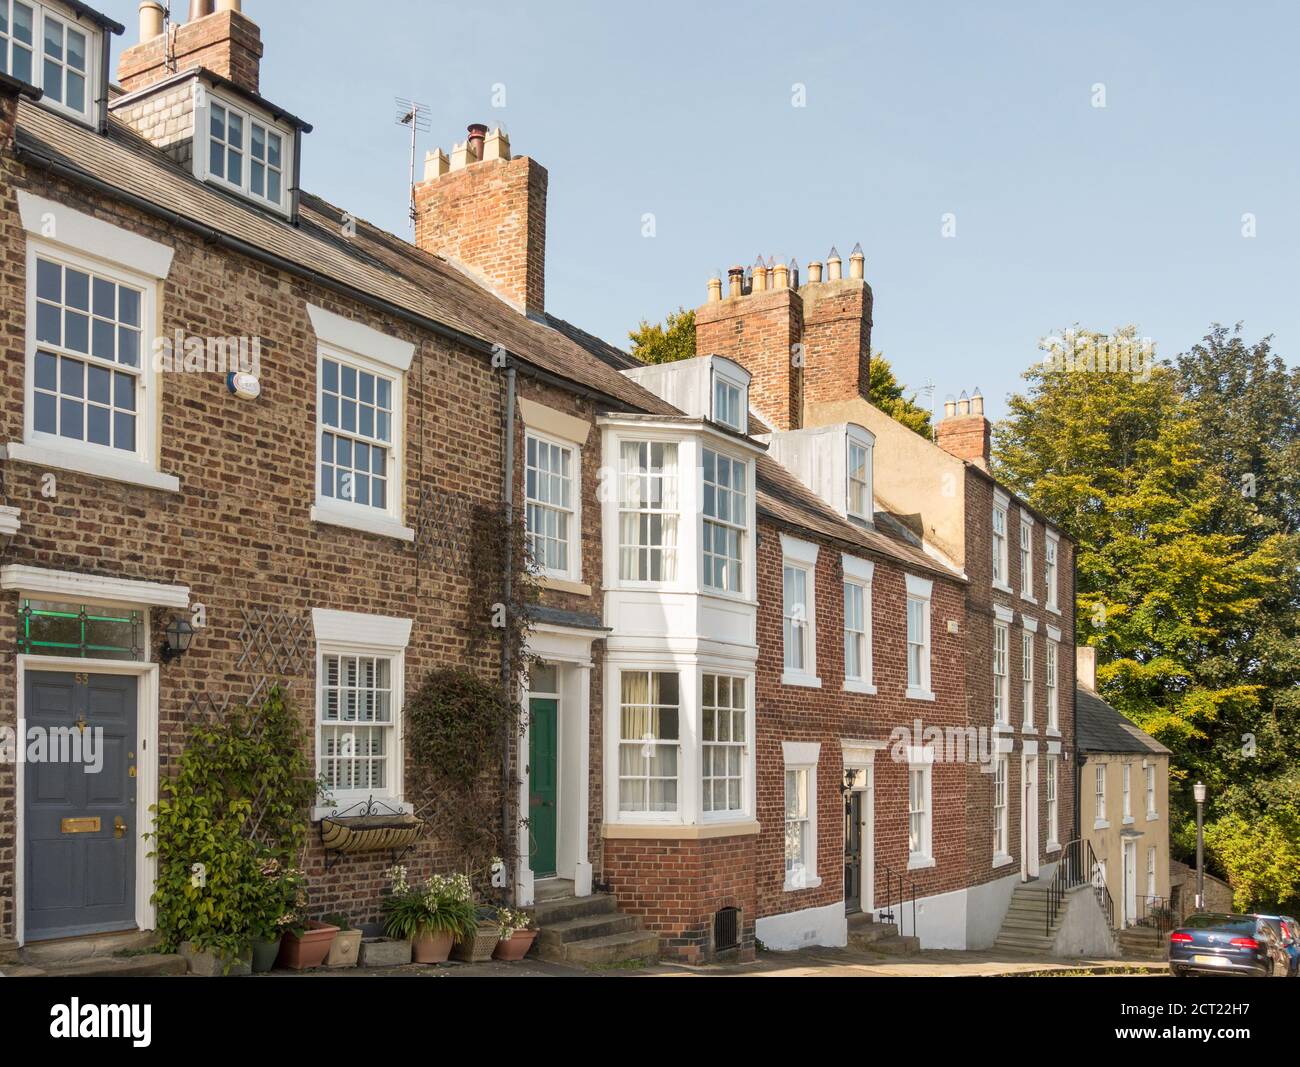 Una fila o terraza de casas de los siglos 18 y 19, edificios de la lista, en South Street, ciudad de Durham, Co. Durham Inglaterra Reino Unido Foto de stock